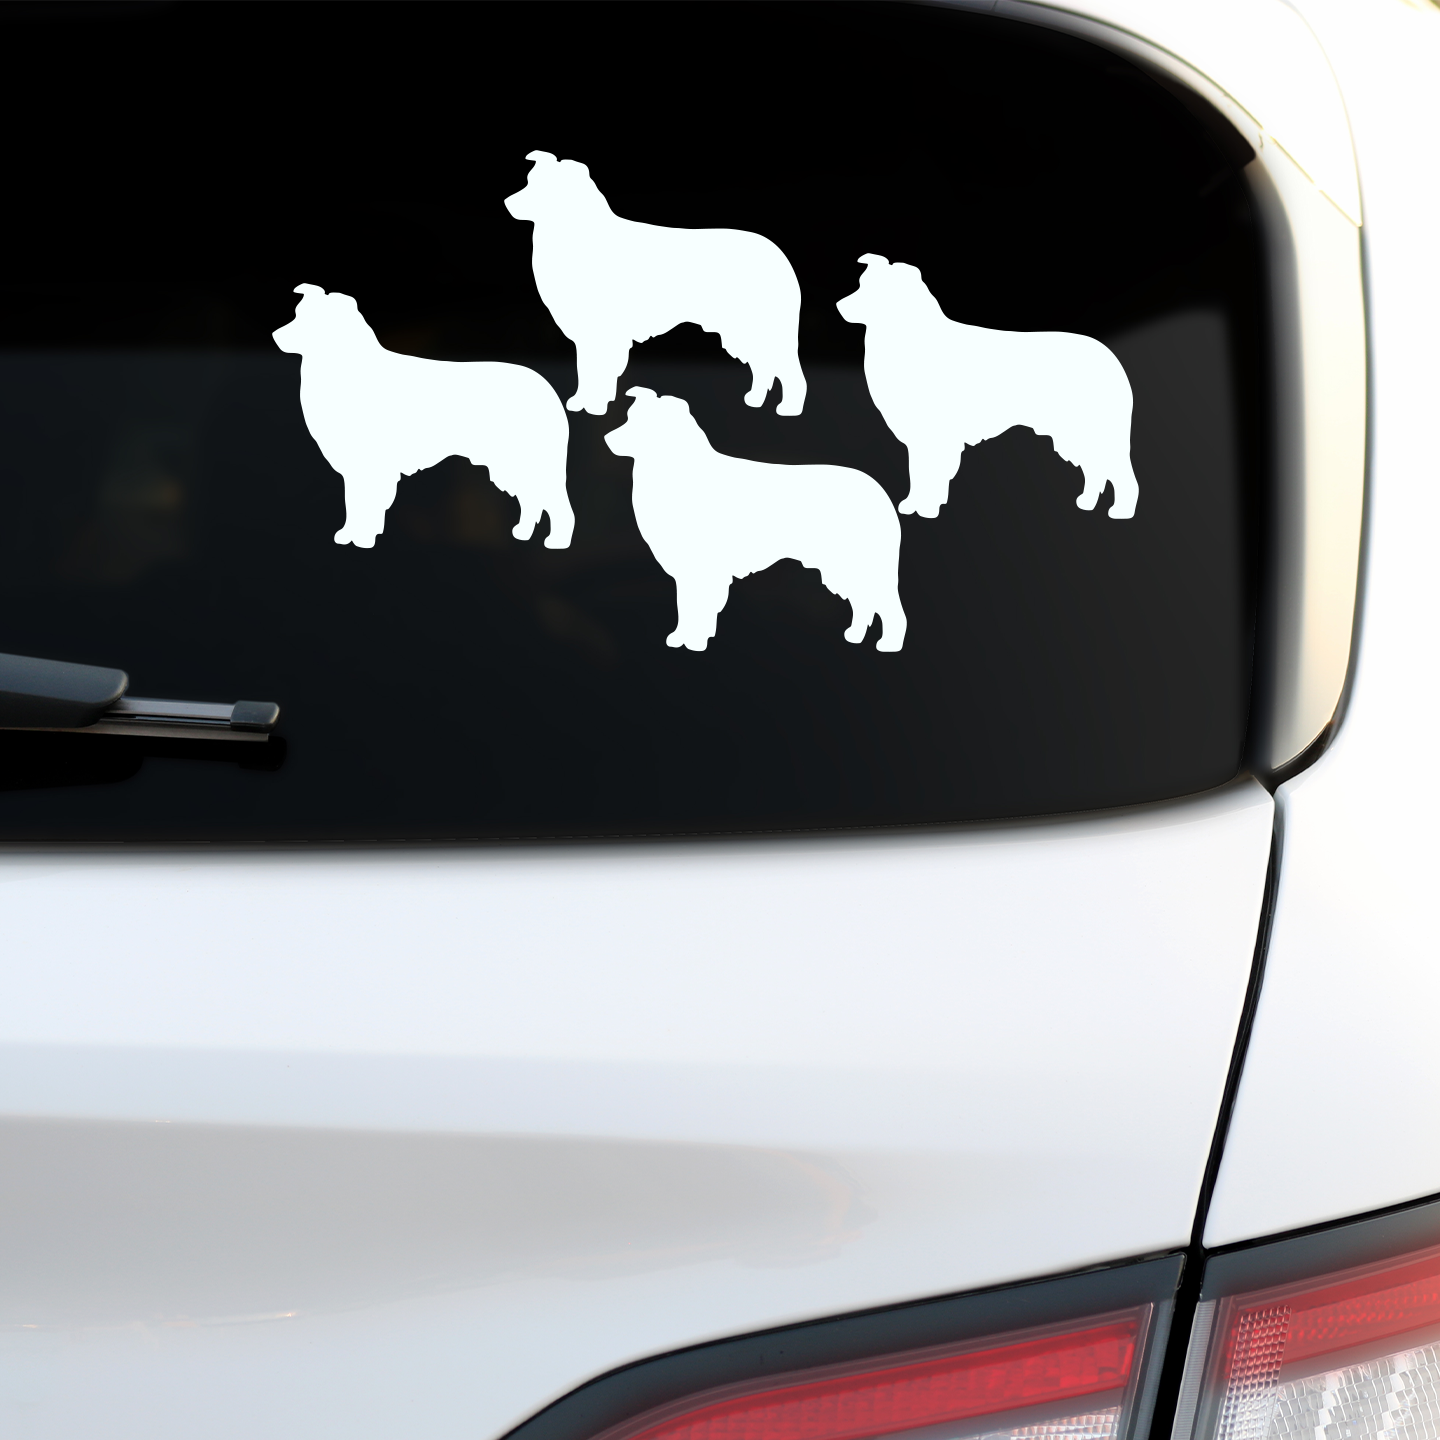 Australian Shepherd Silhouette Sticker